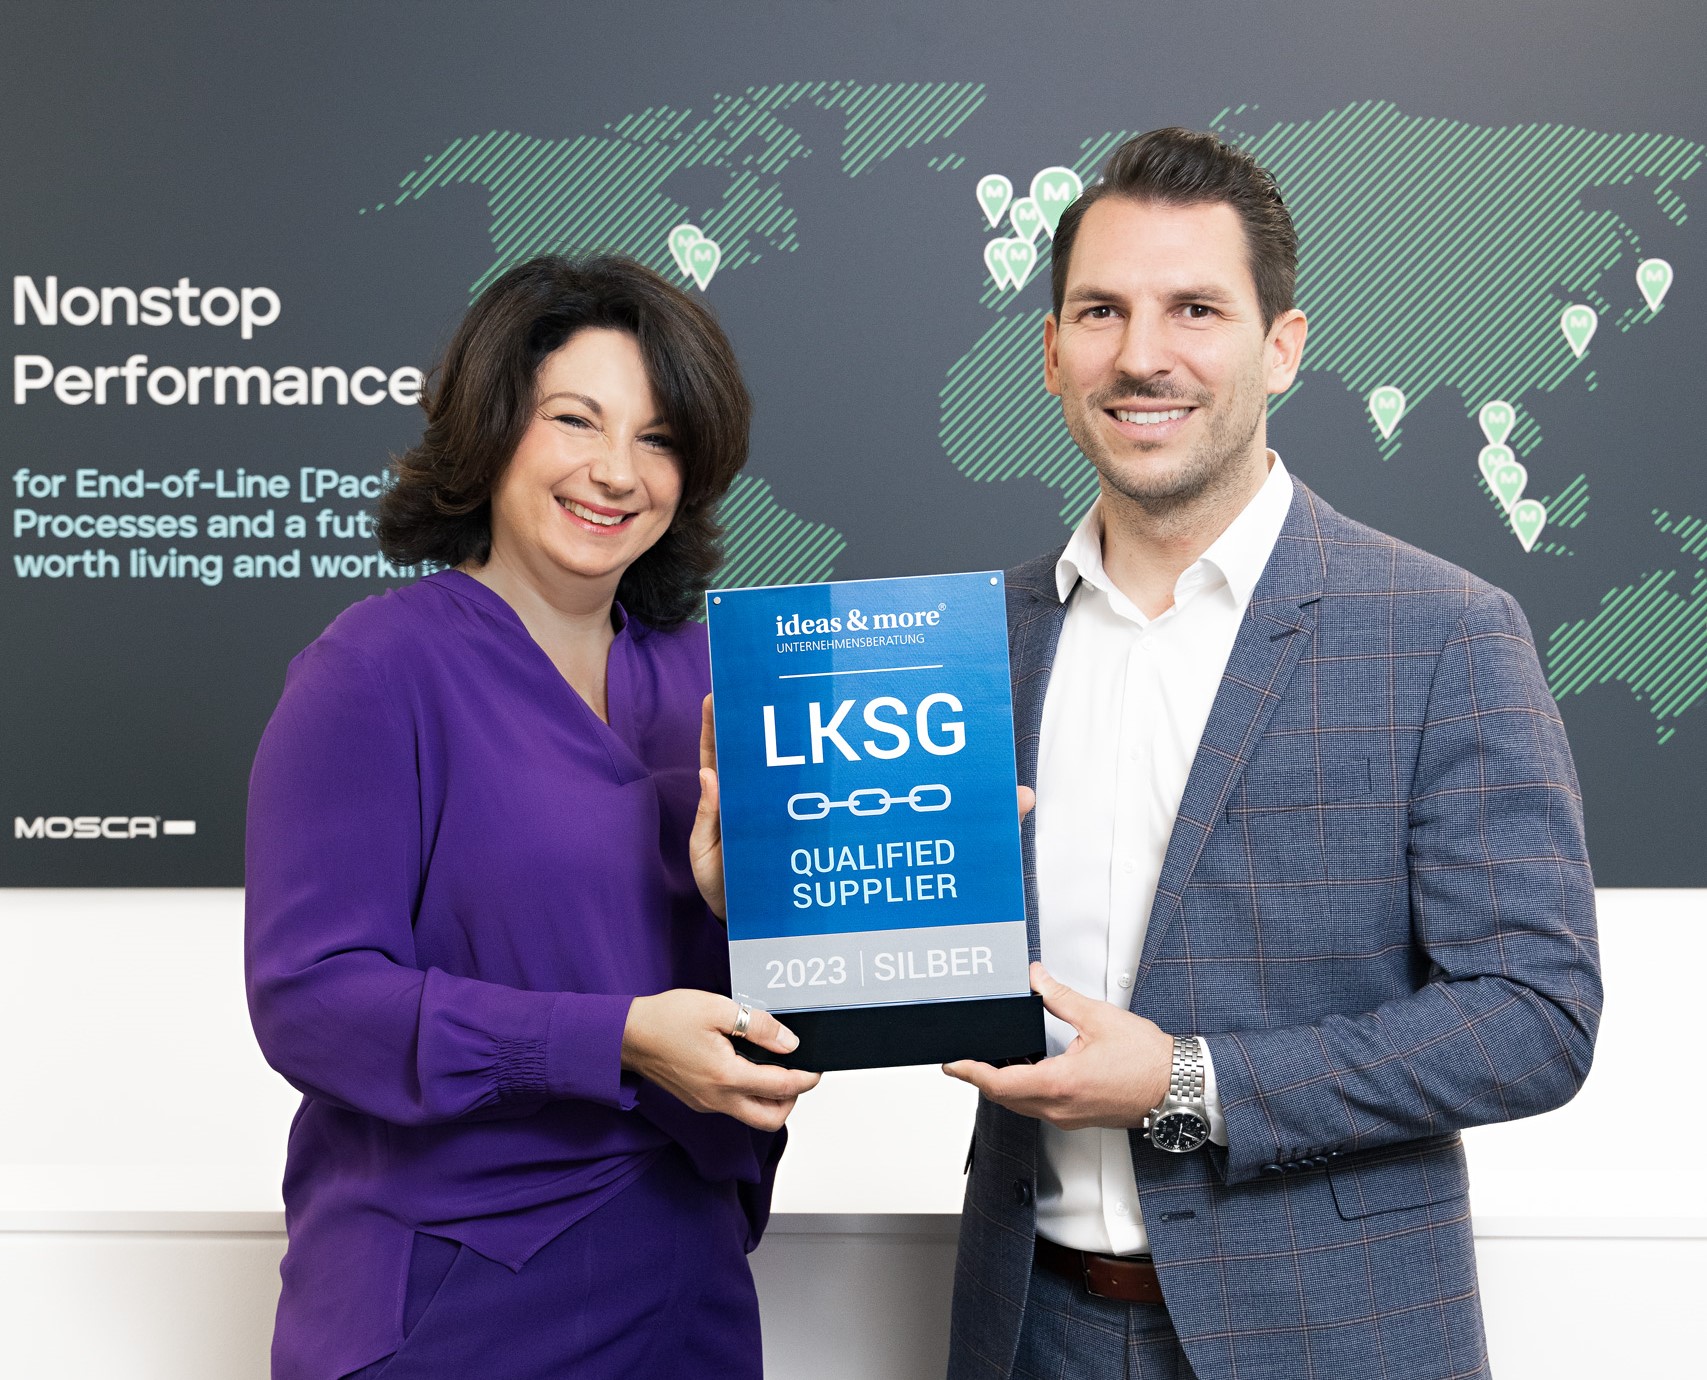 Mit Silber ausgezeichnet: Simone Mosca (CEO) nimmt die Auszeichnung der Unternehmensberatung ideas & more für die proaktive Erfüllung des LkSG entgegen